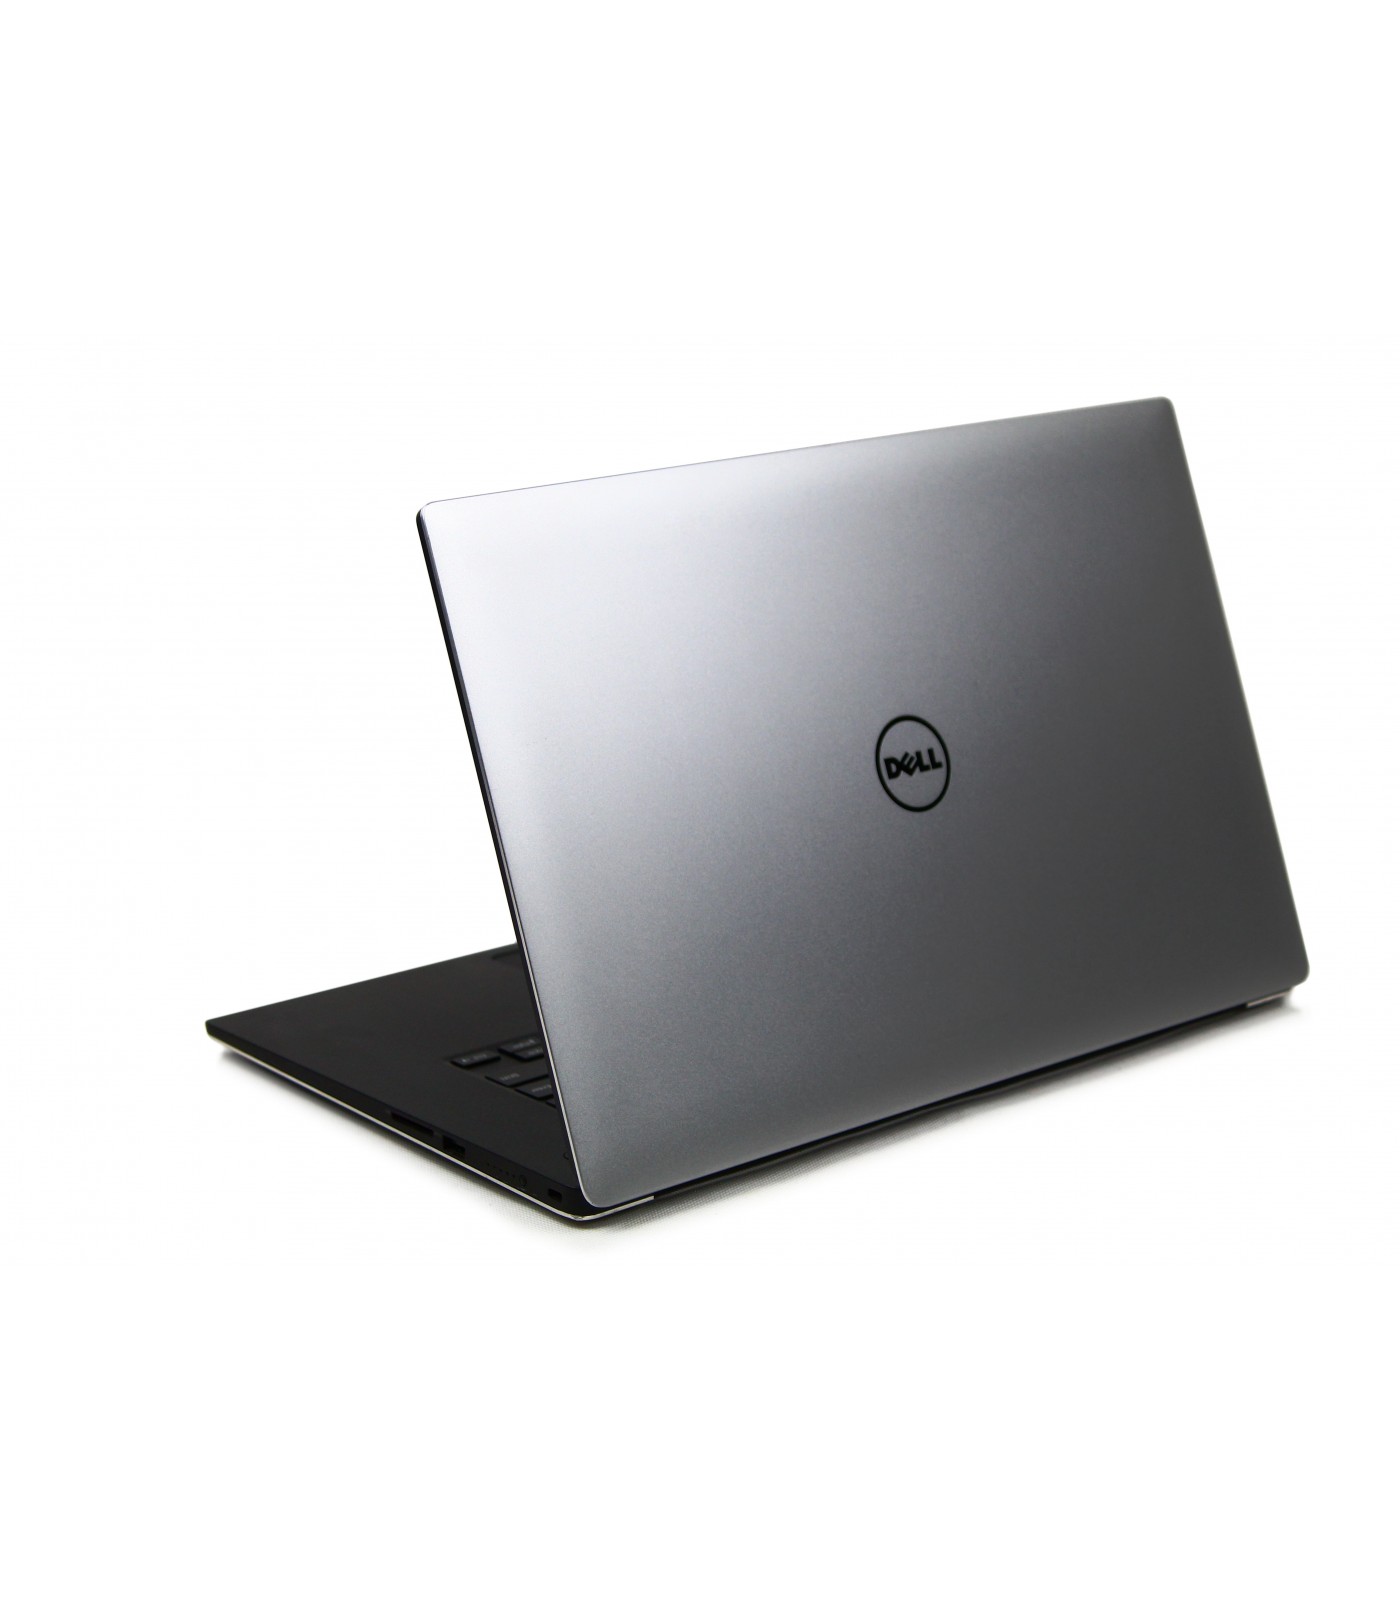 Poleasingowy laptop Dell Precision 5510 z Intel Xeon E3-1505M, 1920x1080 IPS, Klasa A